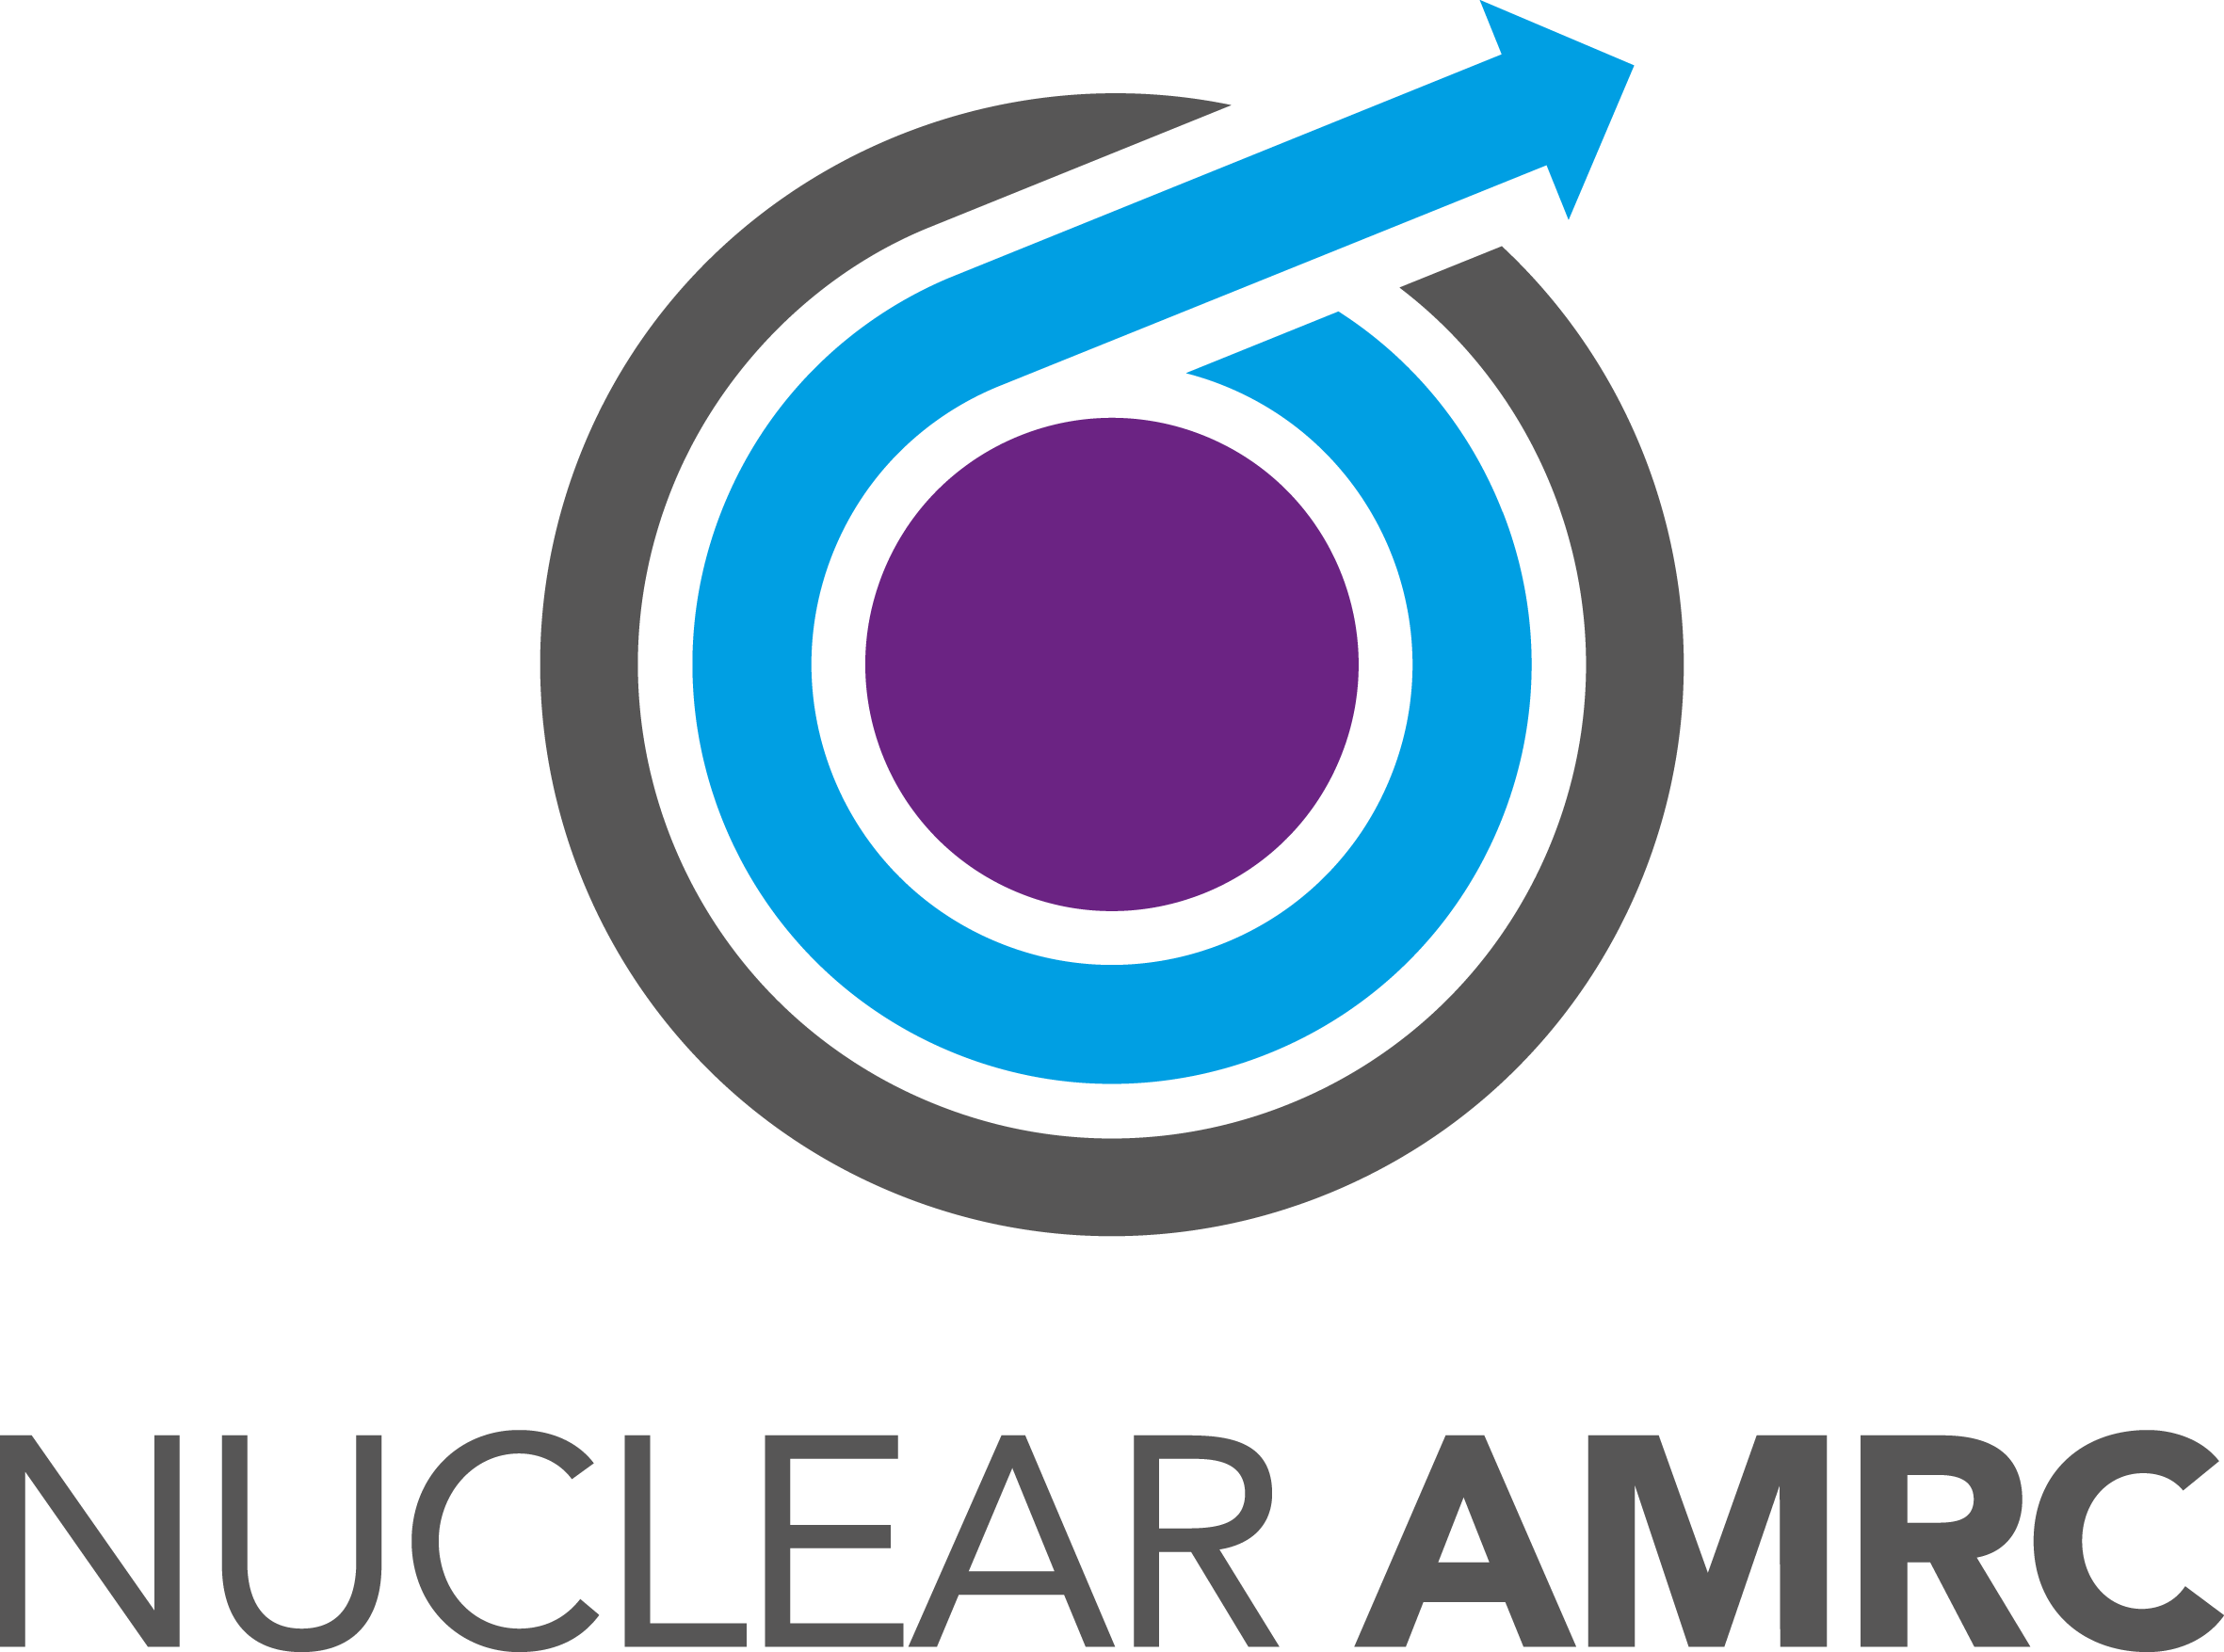 Nuclear AMRC logo